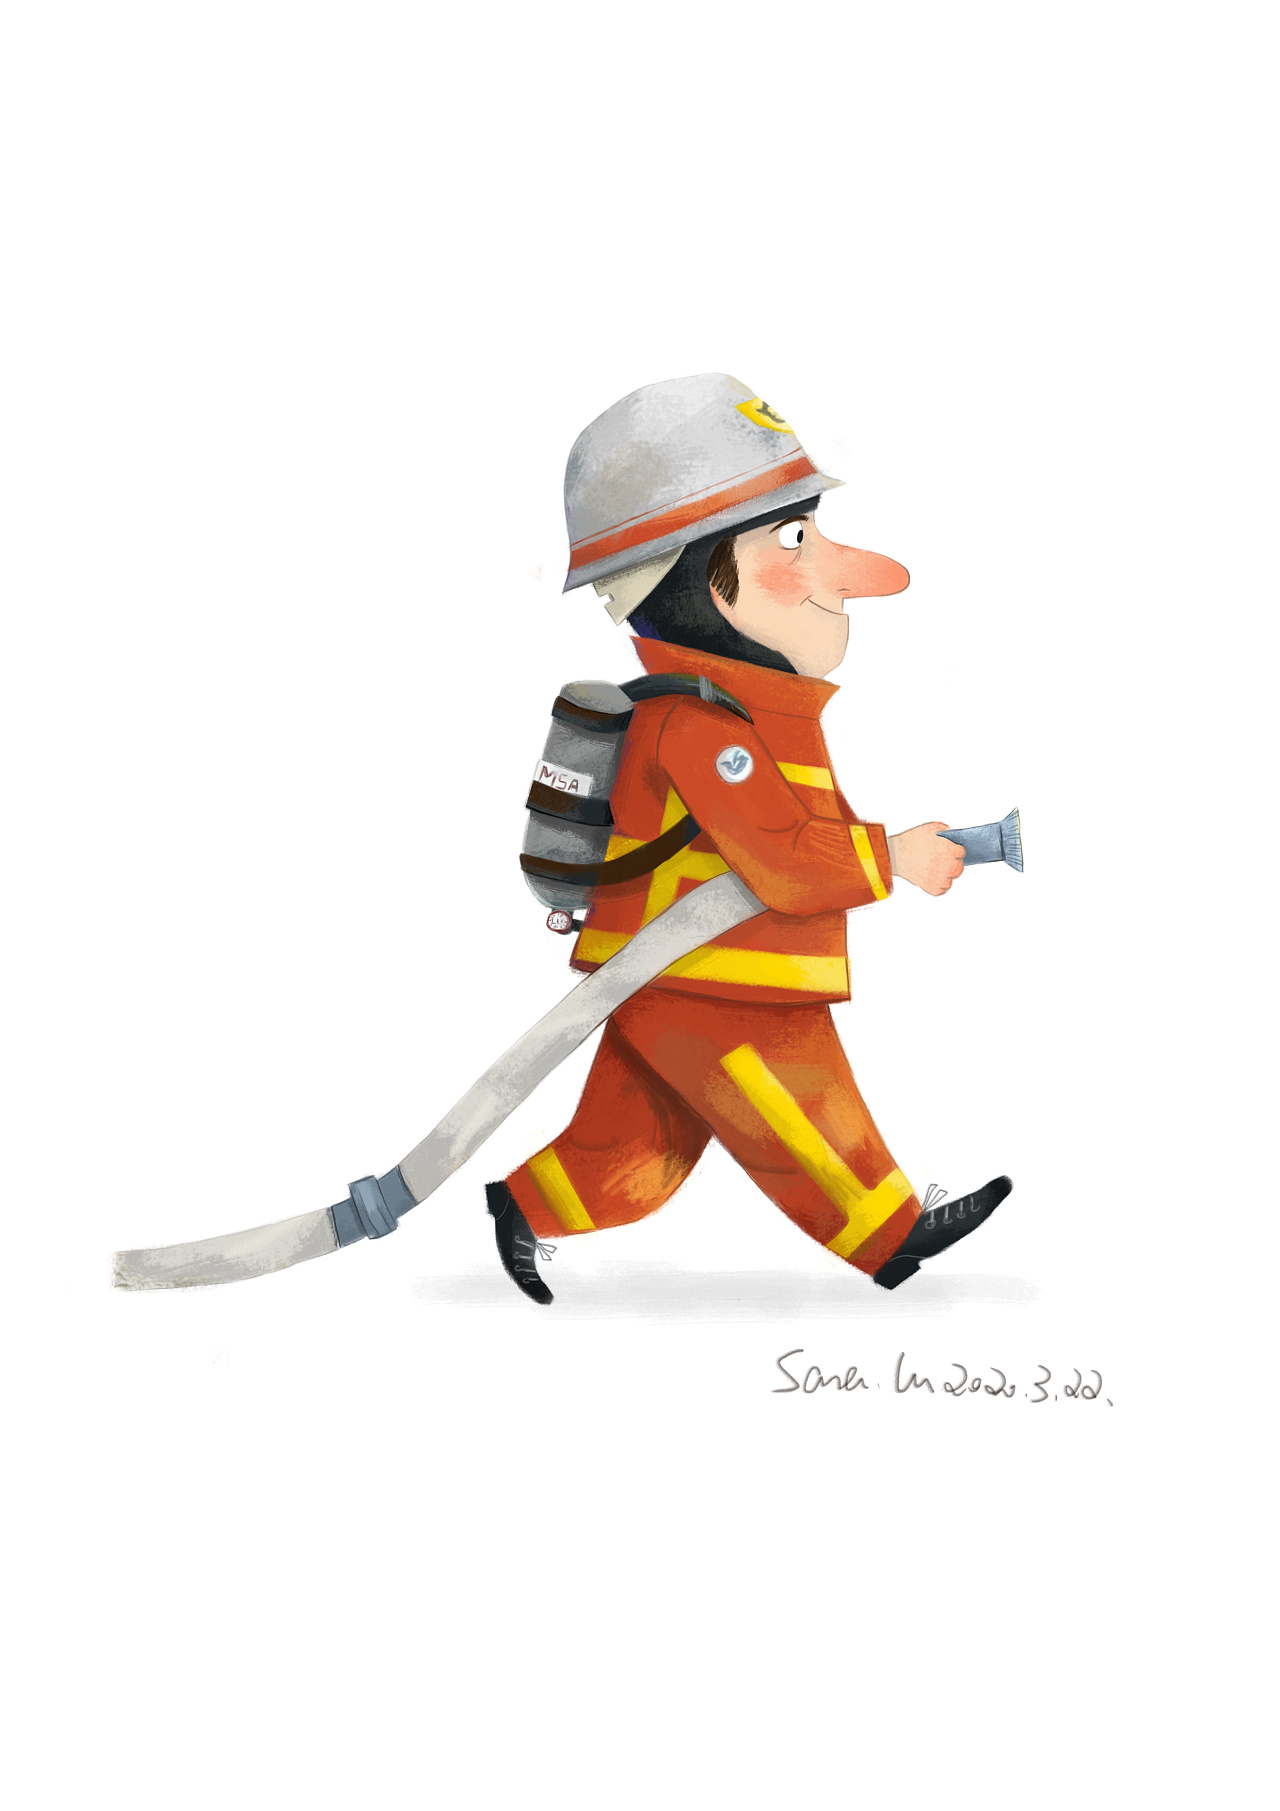 卡通消防员灭火素材免费下载 - 觅知网